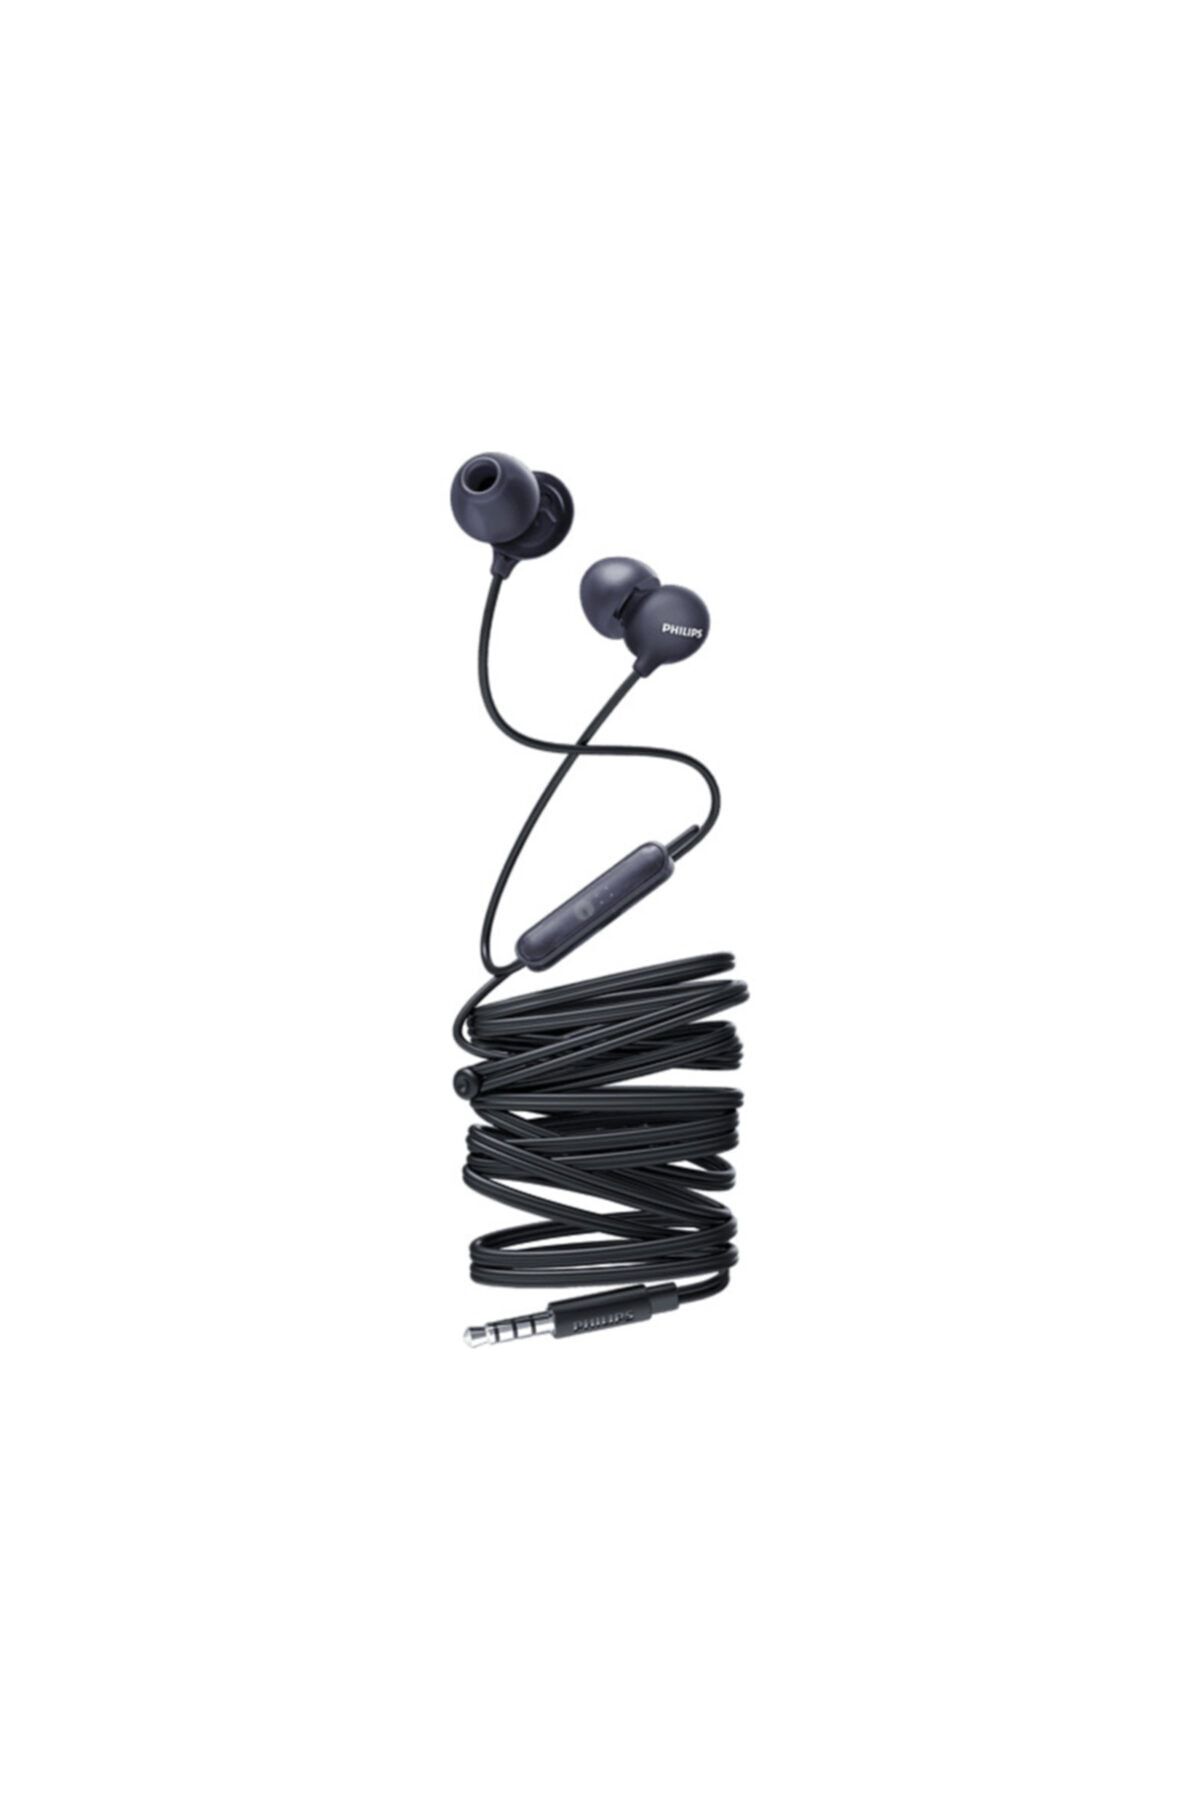 Philips She2405 Kablolu Kulak Içi Kulaklık Siyah